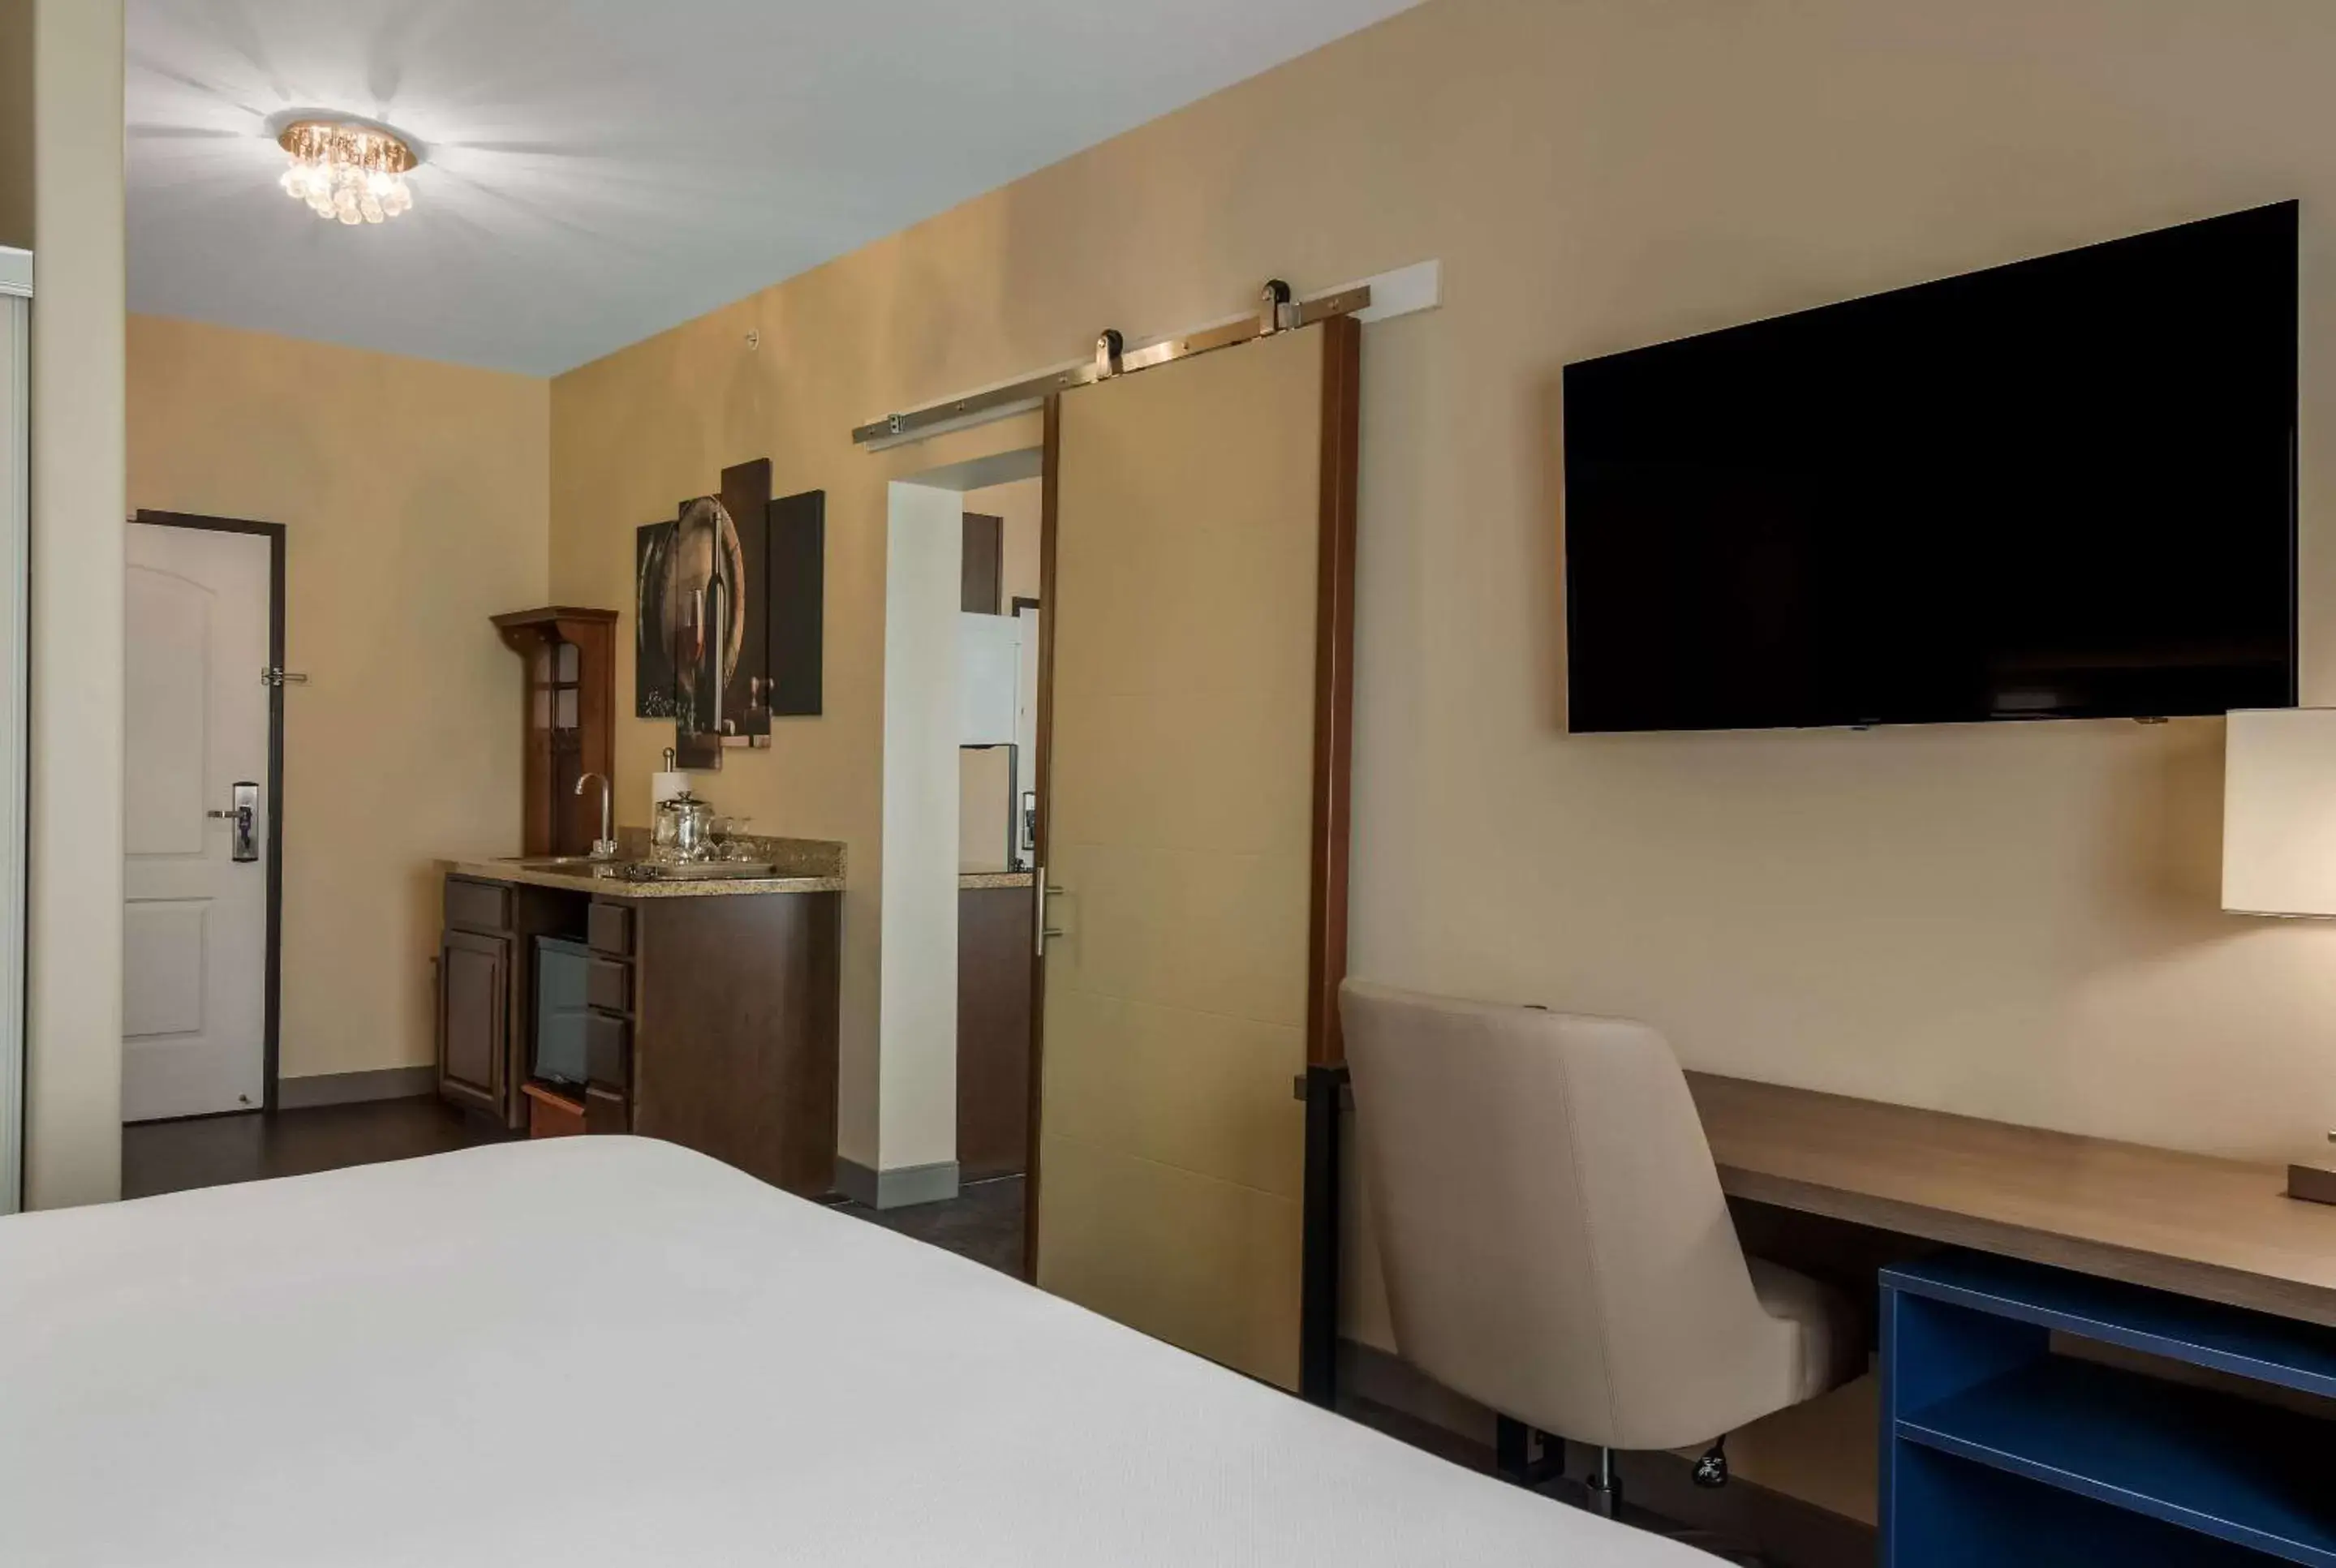 Bedroom, TV/Entertainment Center in Comfort Inn & Suites Barnesville - Frackville